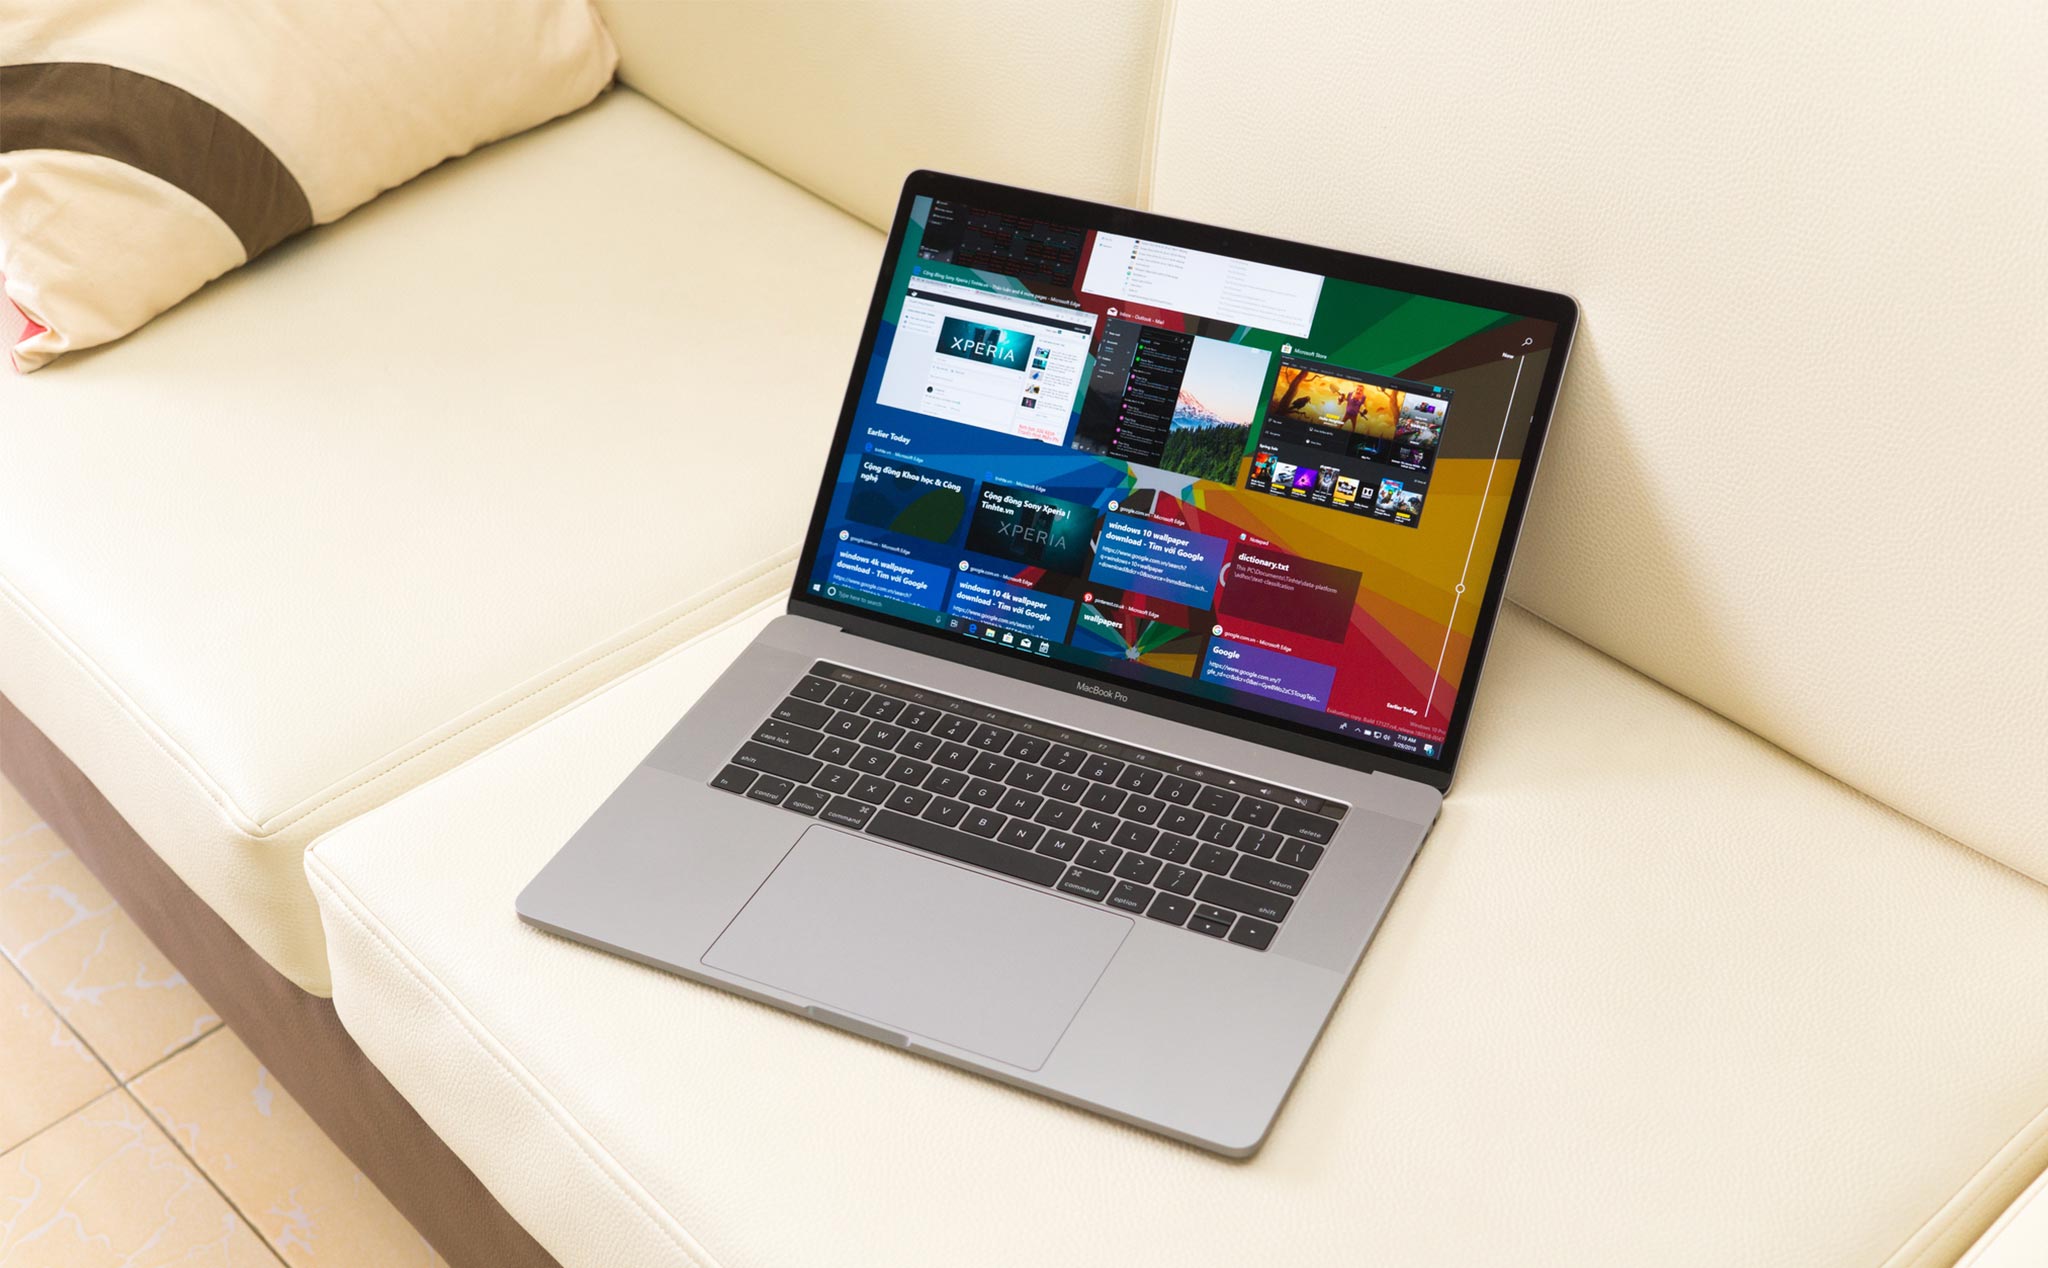 MacBook chạy Windows giờ đây sử dụng trackpad tốt hơn với bản cập nhật Bootcamp mới